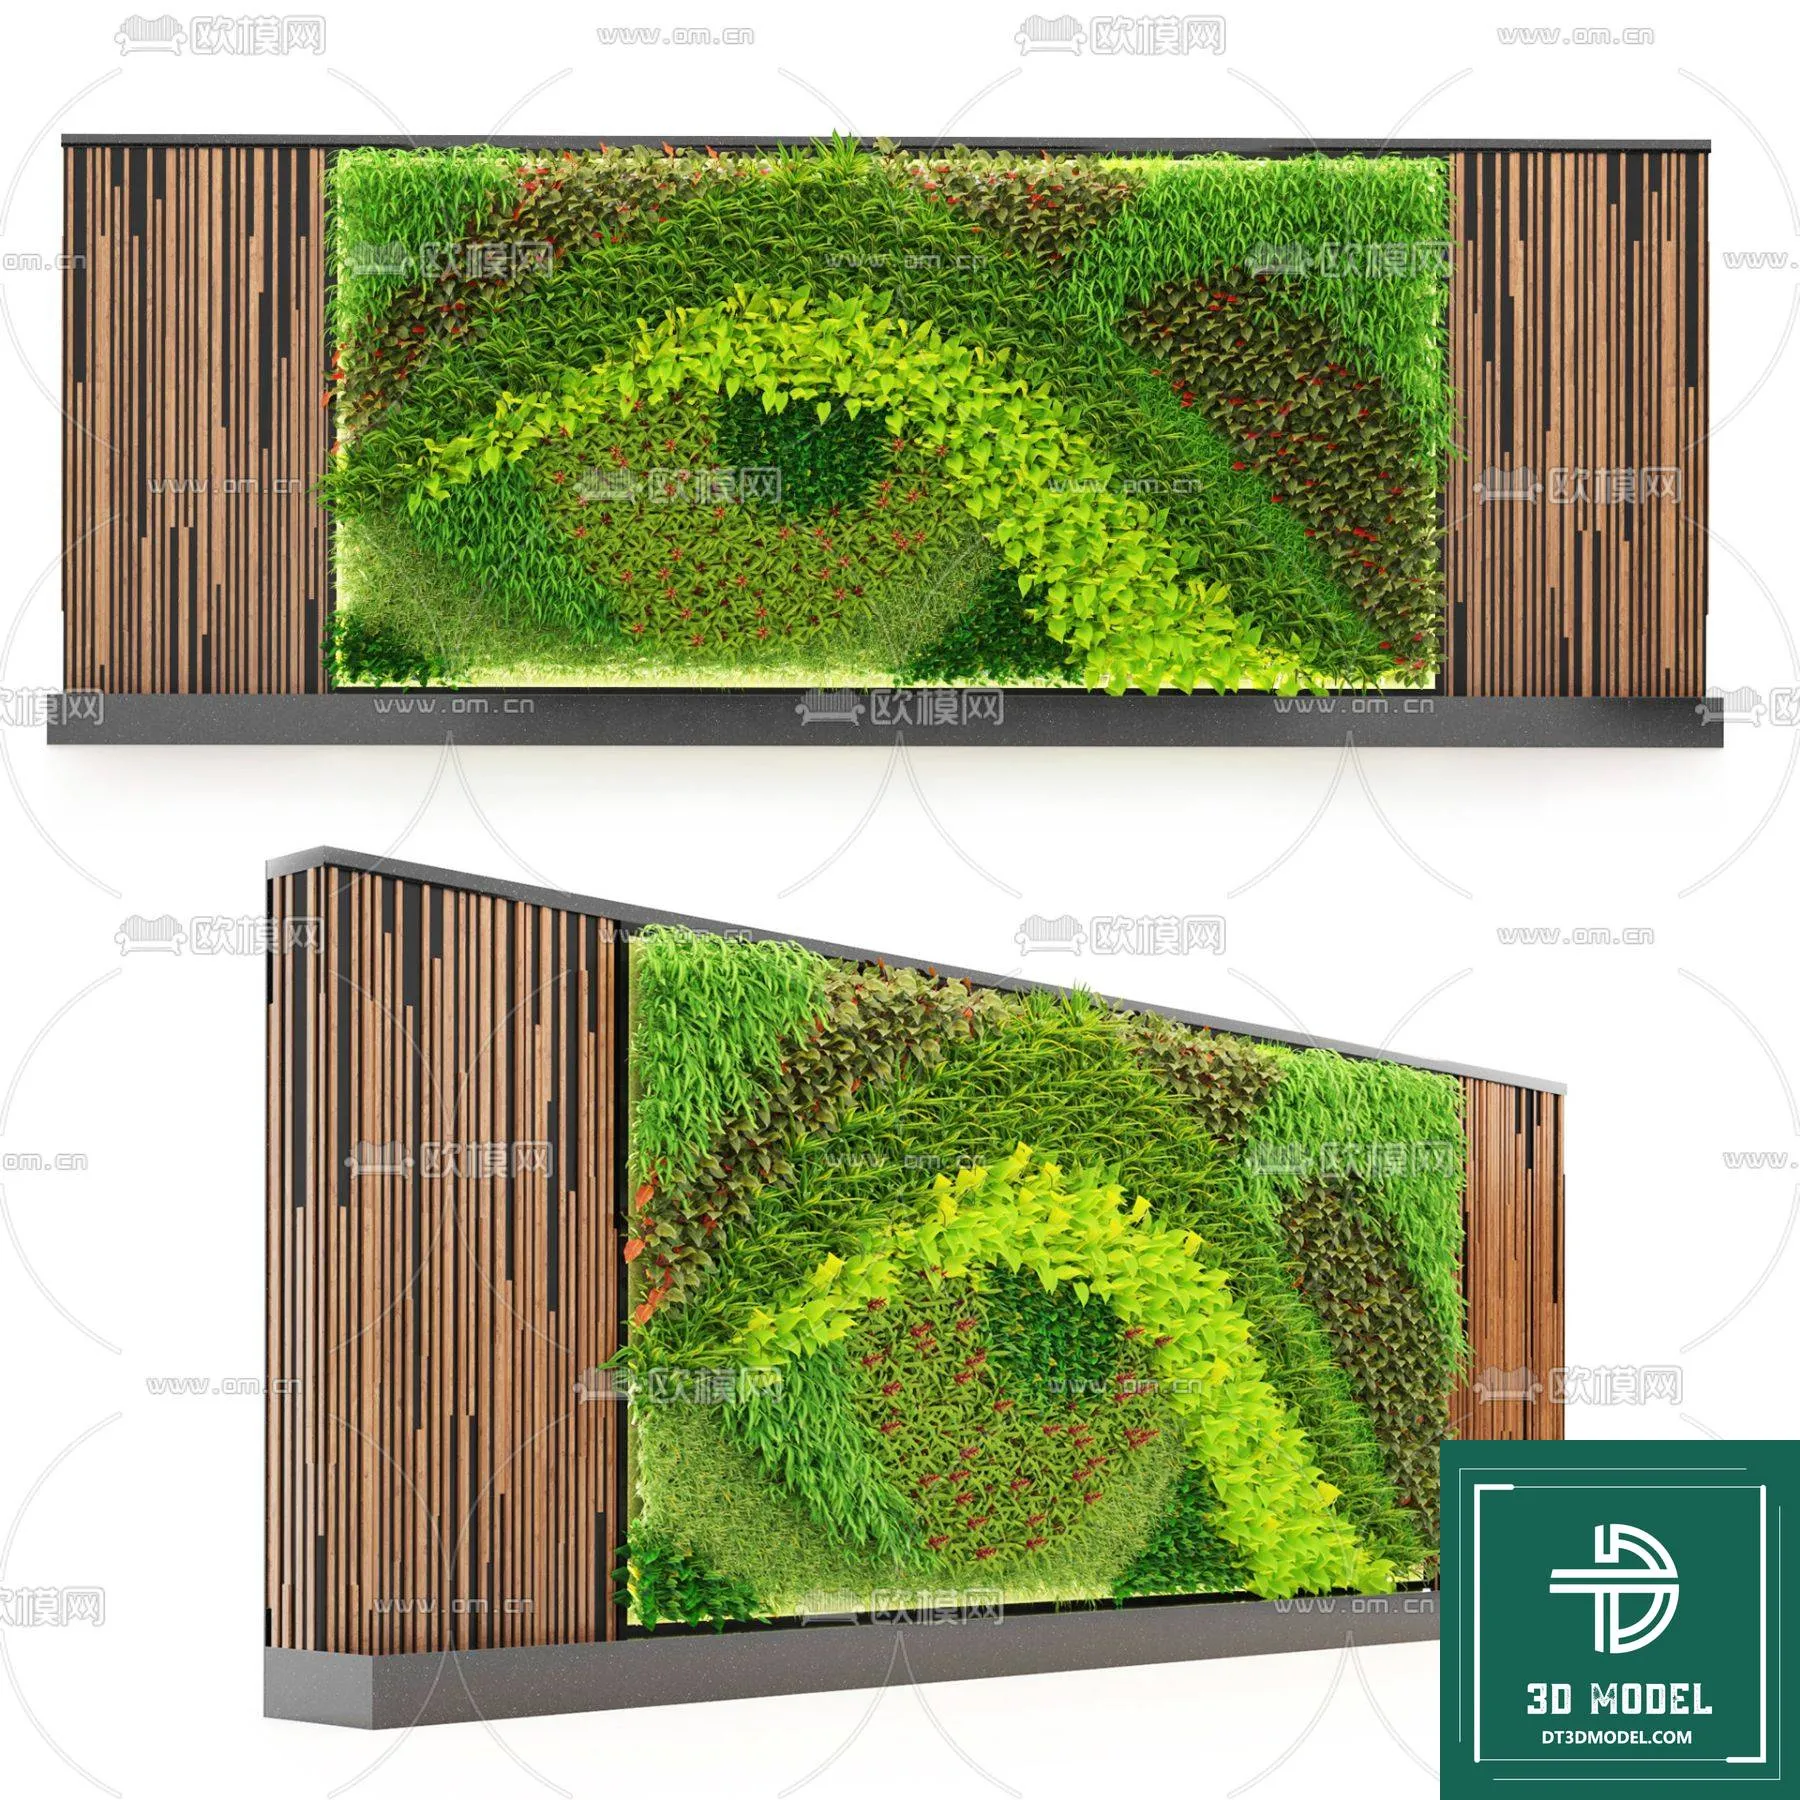 VERTICAL GARDEN – FITOWALL PLANT 3D MODEL – 137